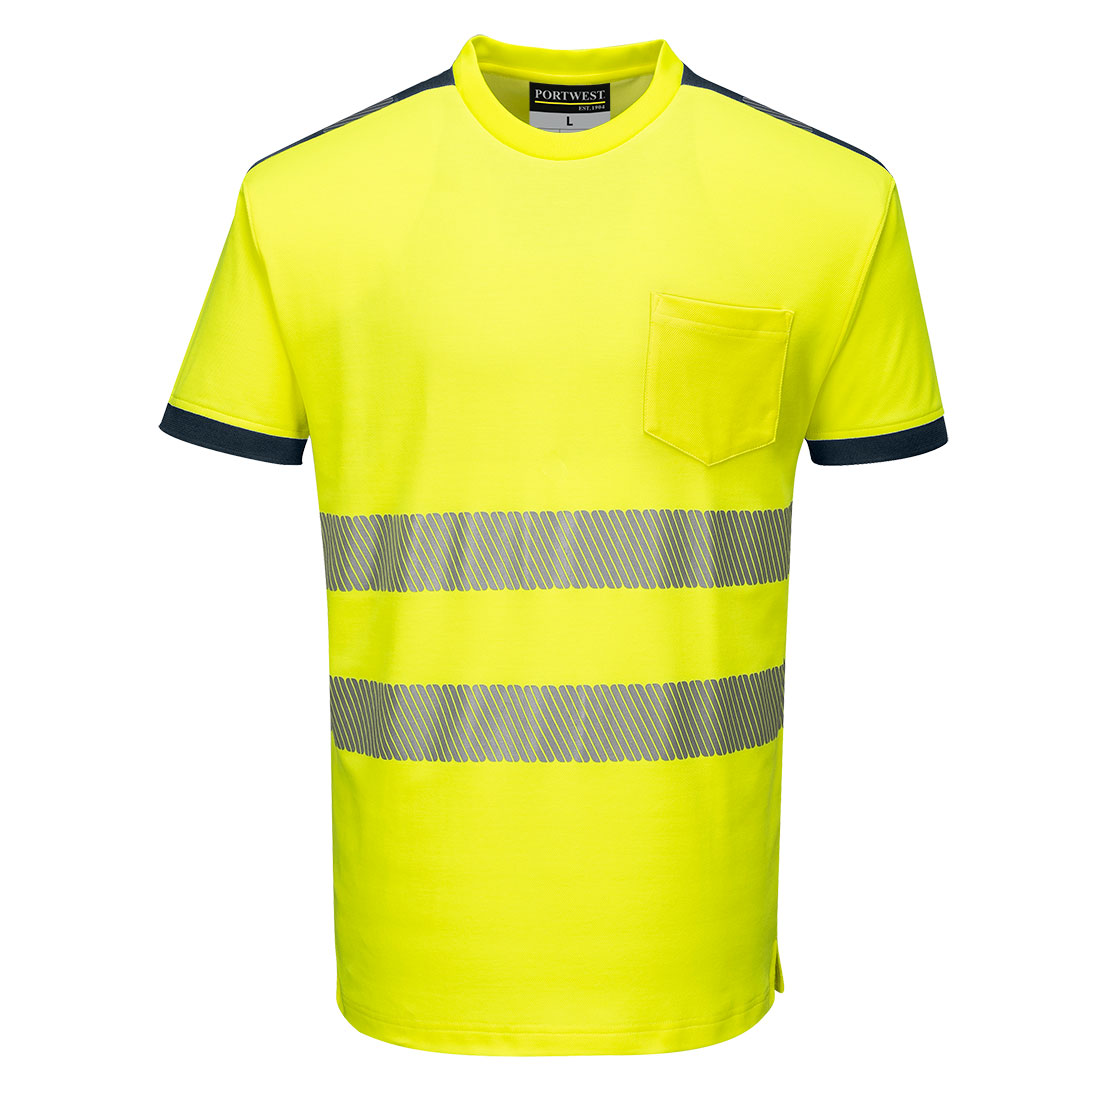 PW3 Hi-Vis T-Shirt S/S - Yellow/Navy